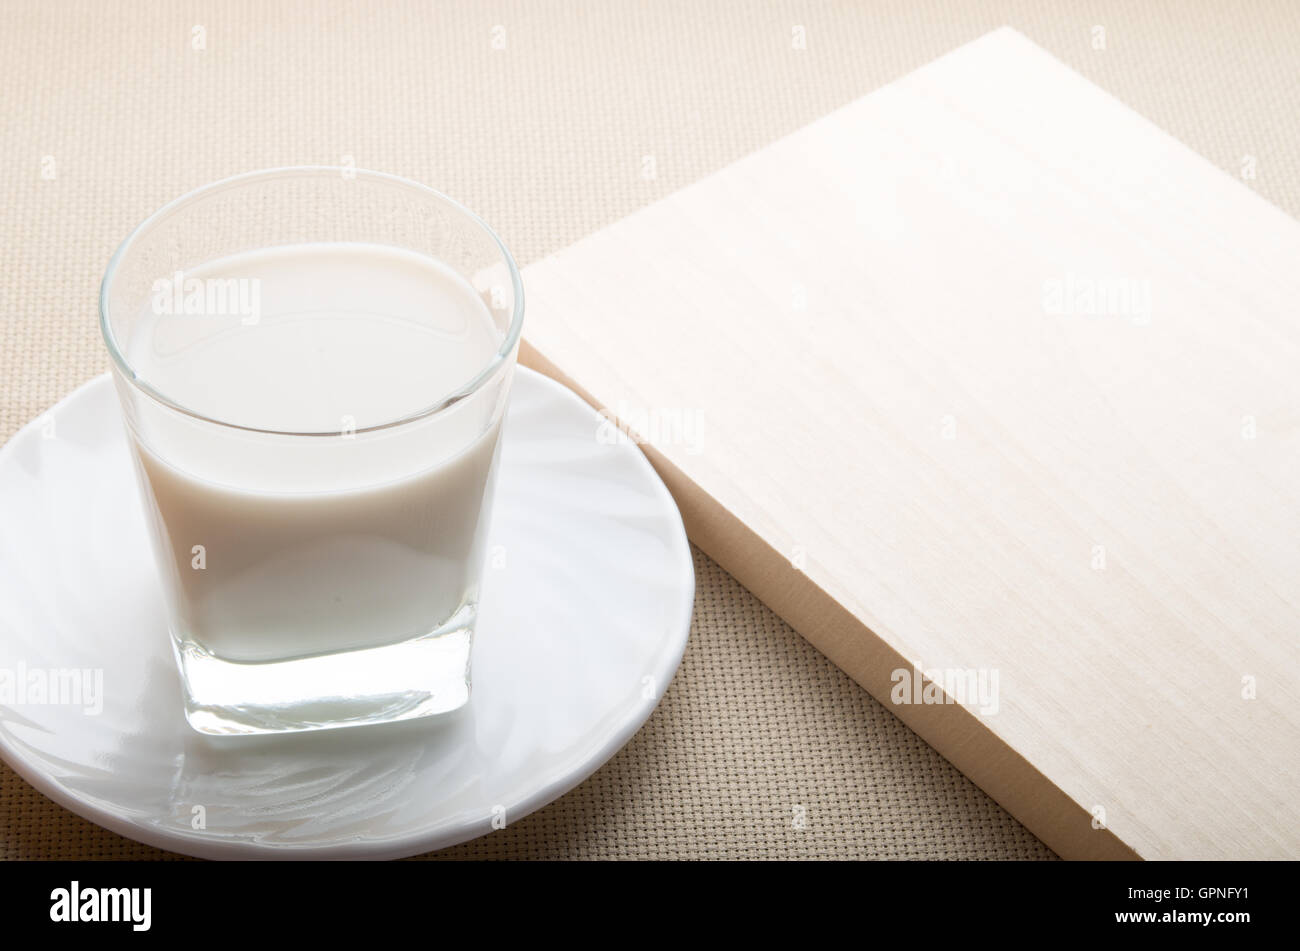 Un verre de lait sur une soucoupe blanc avec un bord en bois naturel sur fond nappe Banque D'Images